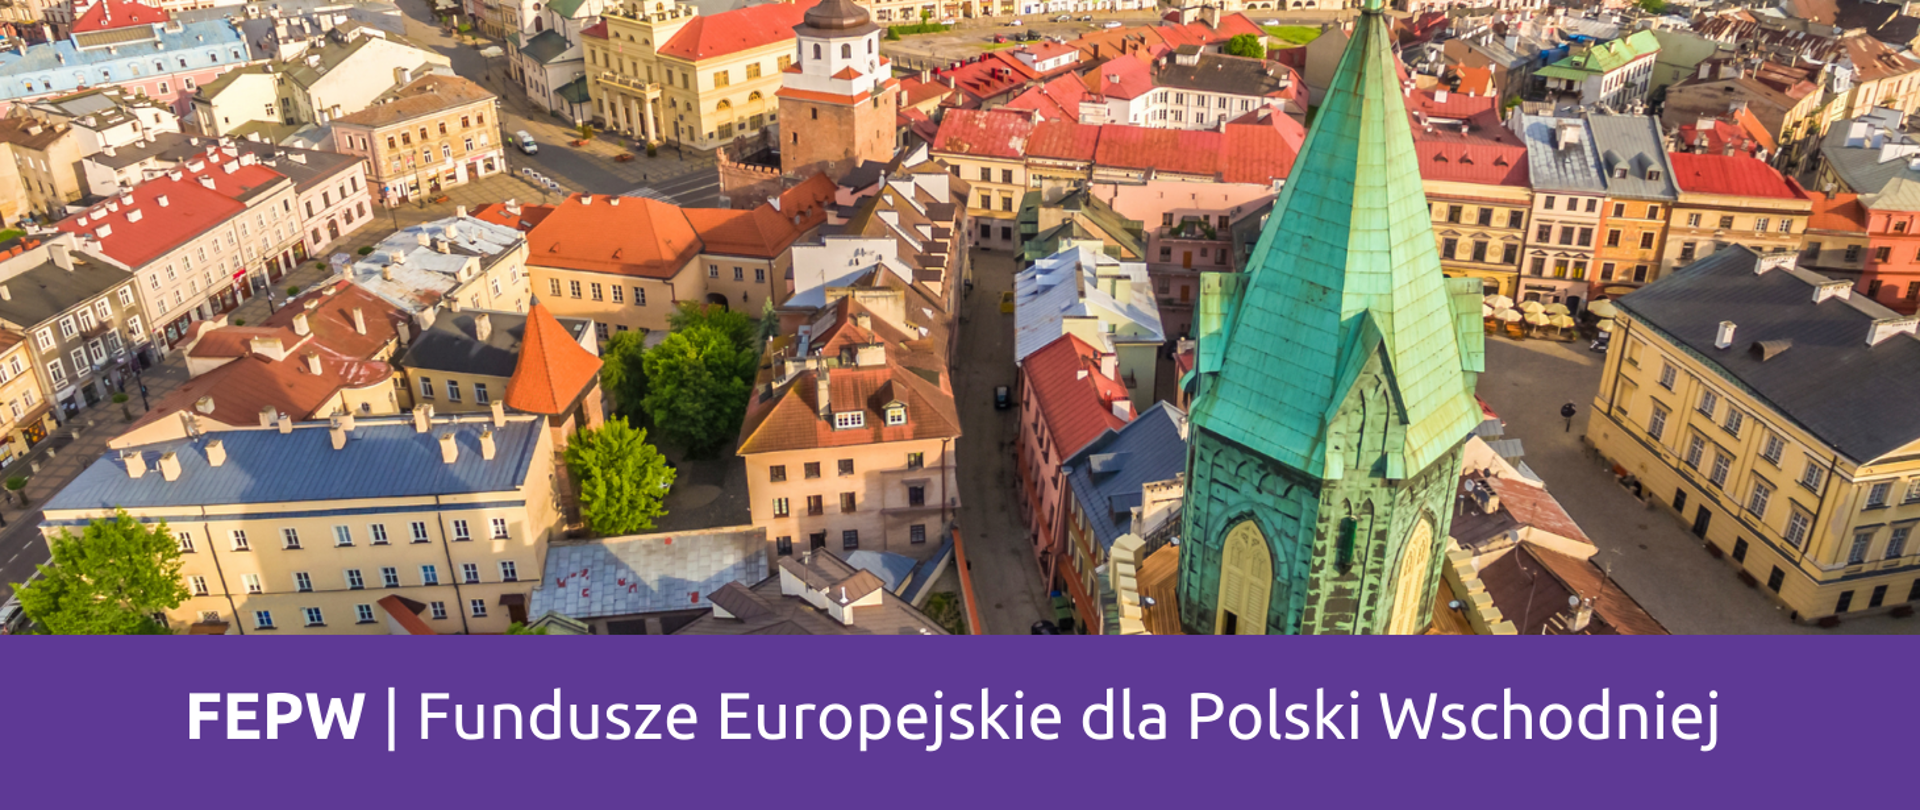 Fundusze Europejskie na lata 2021-2027 trafią do Polski Wschodniej – akceptacja Komisji Europejskiej dla nowego programu dedykowanego wschodnim województwom